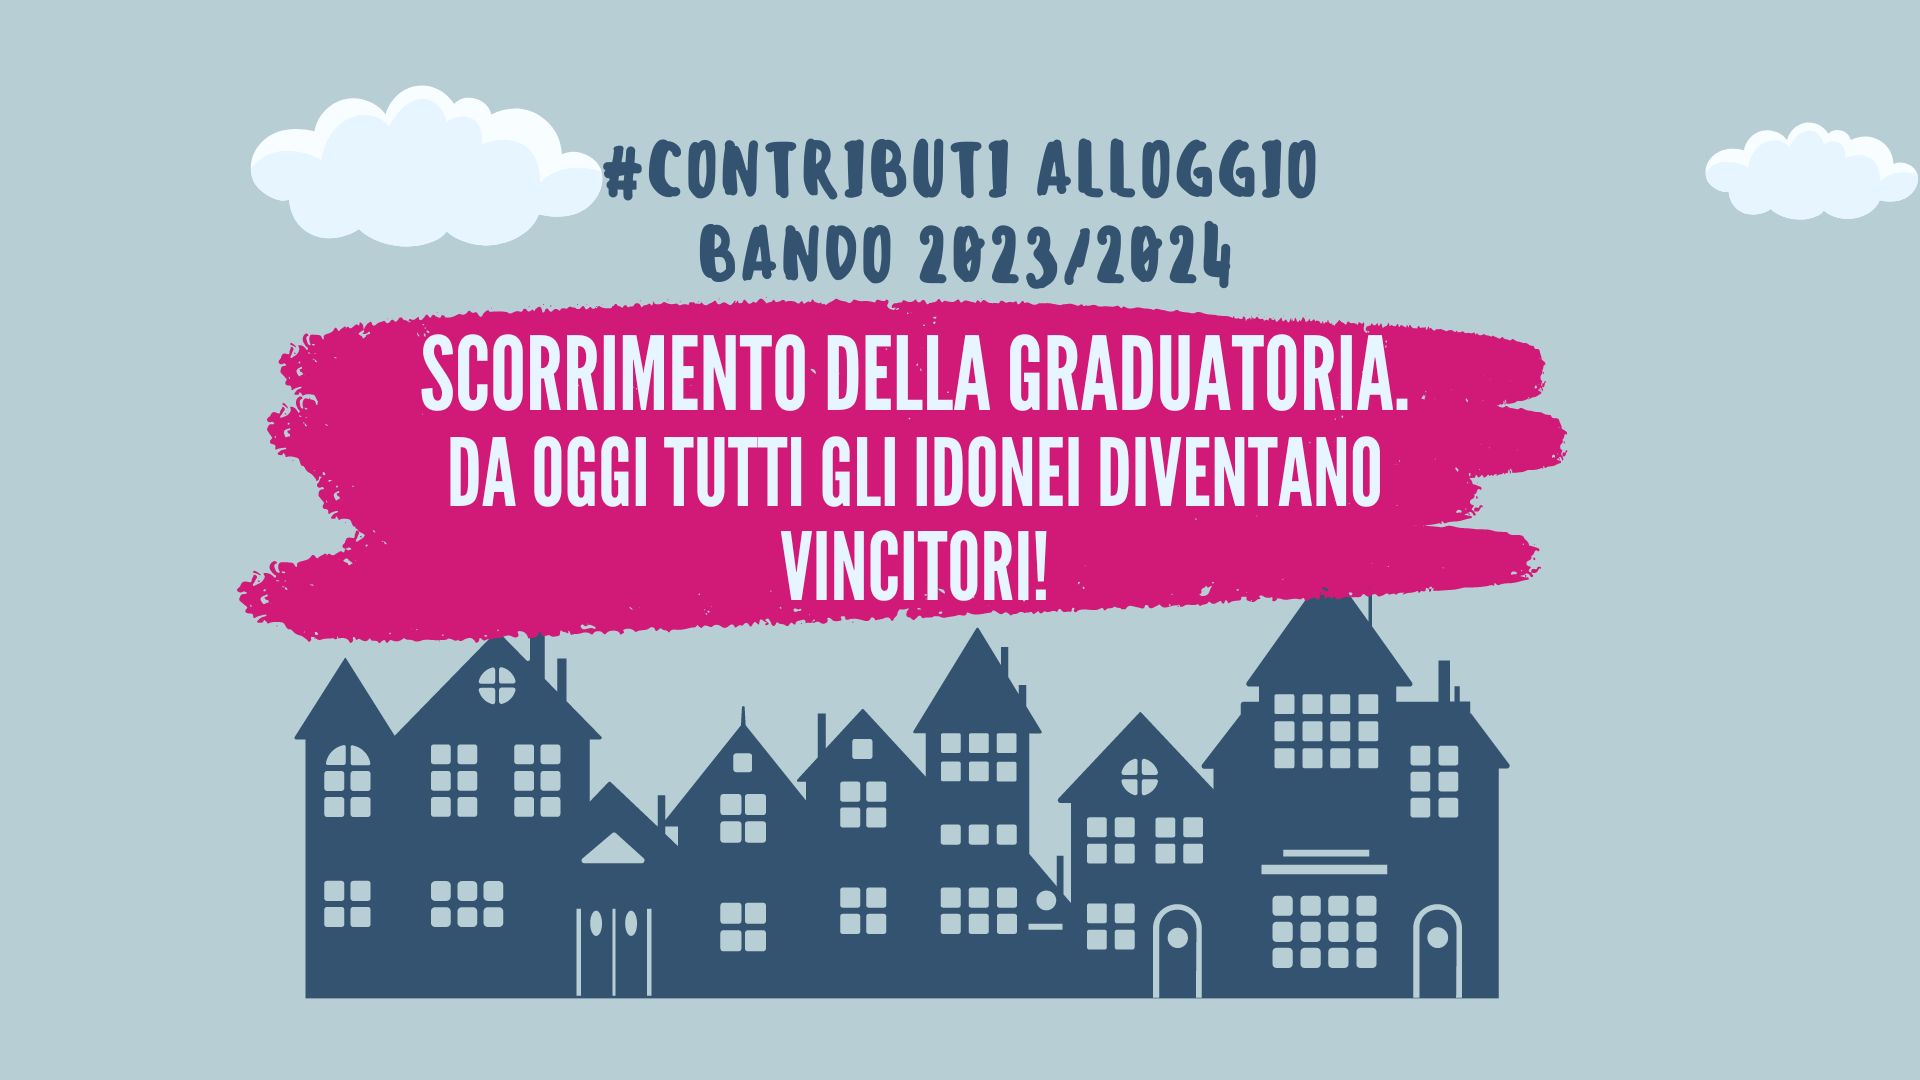 Contributi Alloggio-Bando 2023/2024 -Scorrimento della graduatoria - Da oggi tutti gli idonei diventano vincitori.